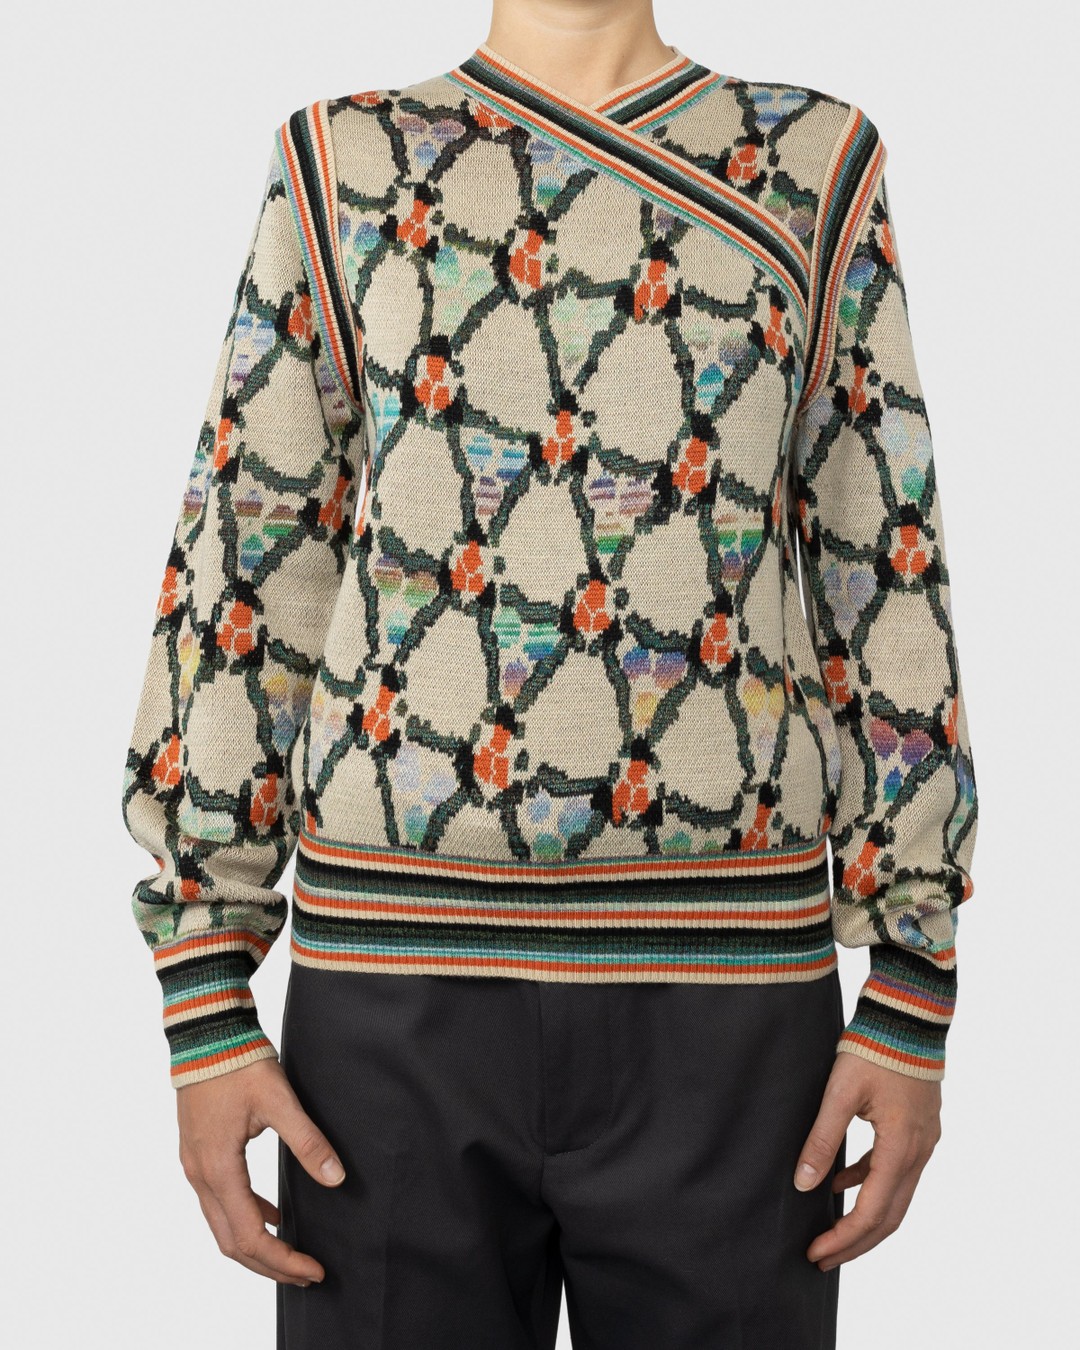 Acne Studios – Wrapped Sweater Beige - Knitwear - Multi - Image 2